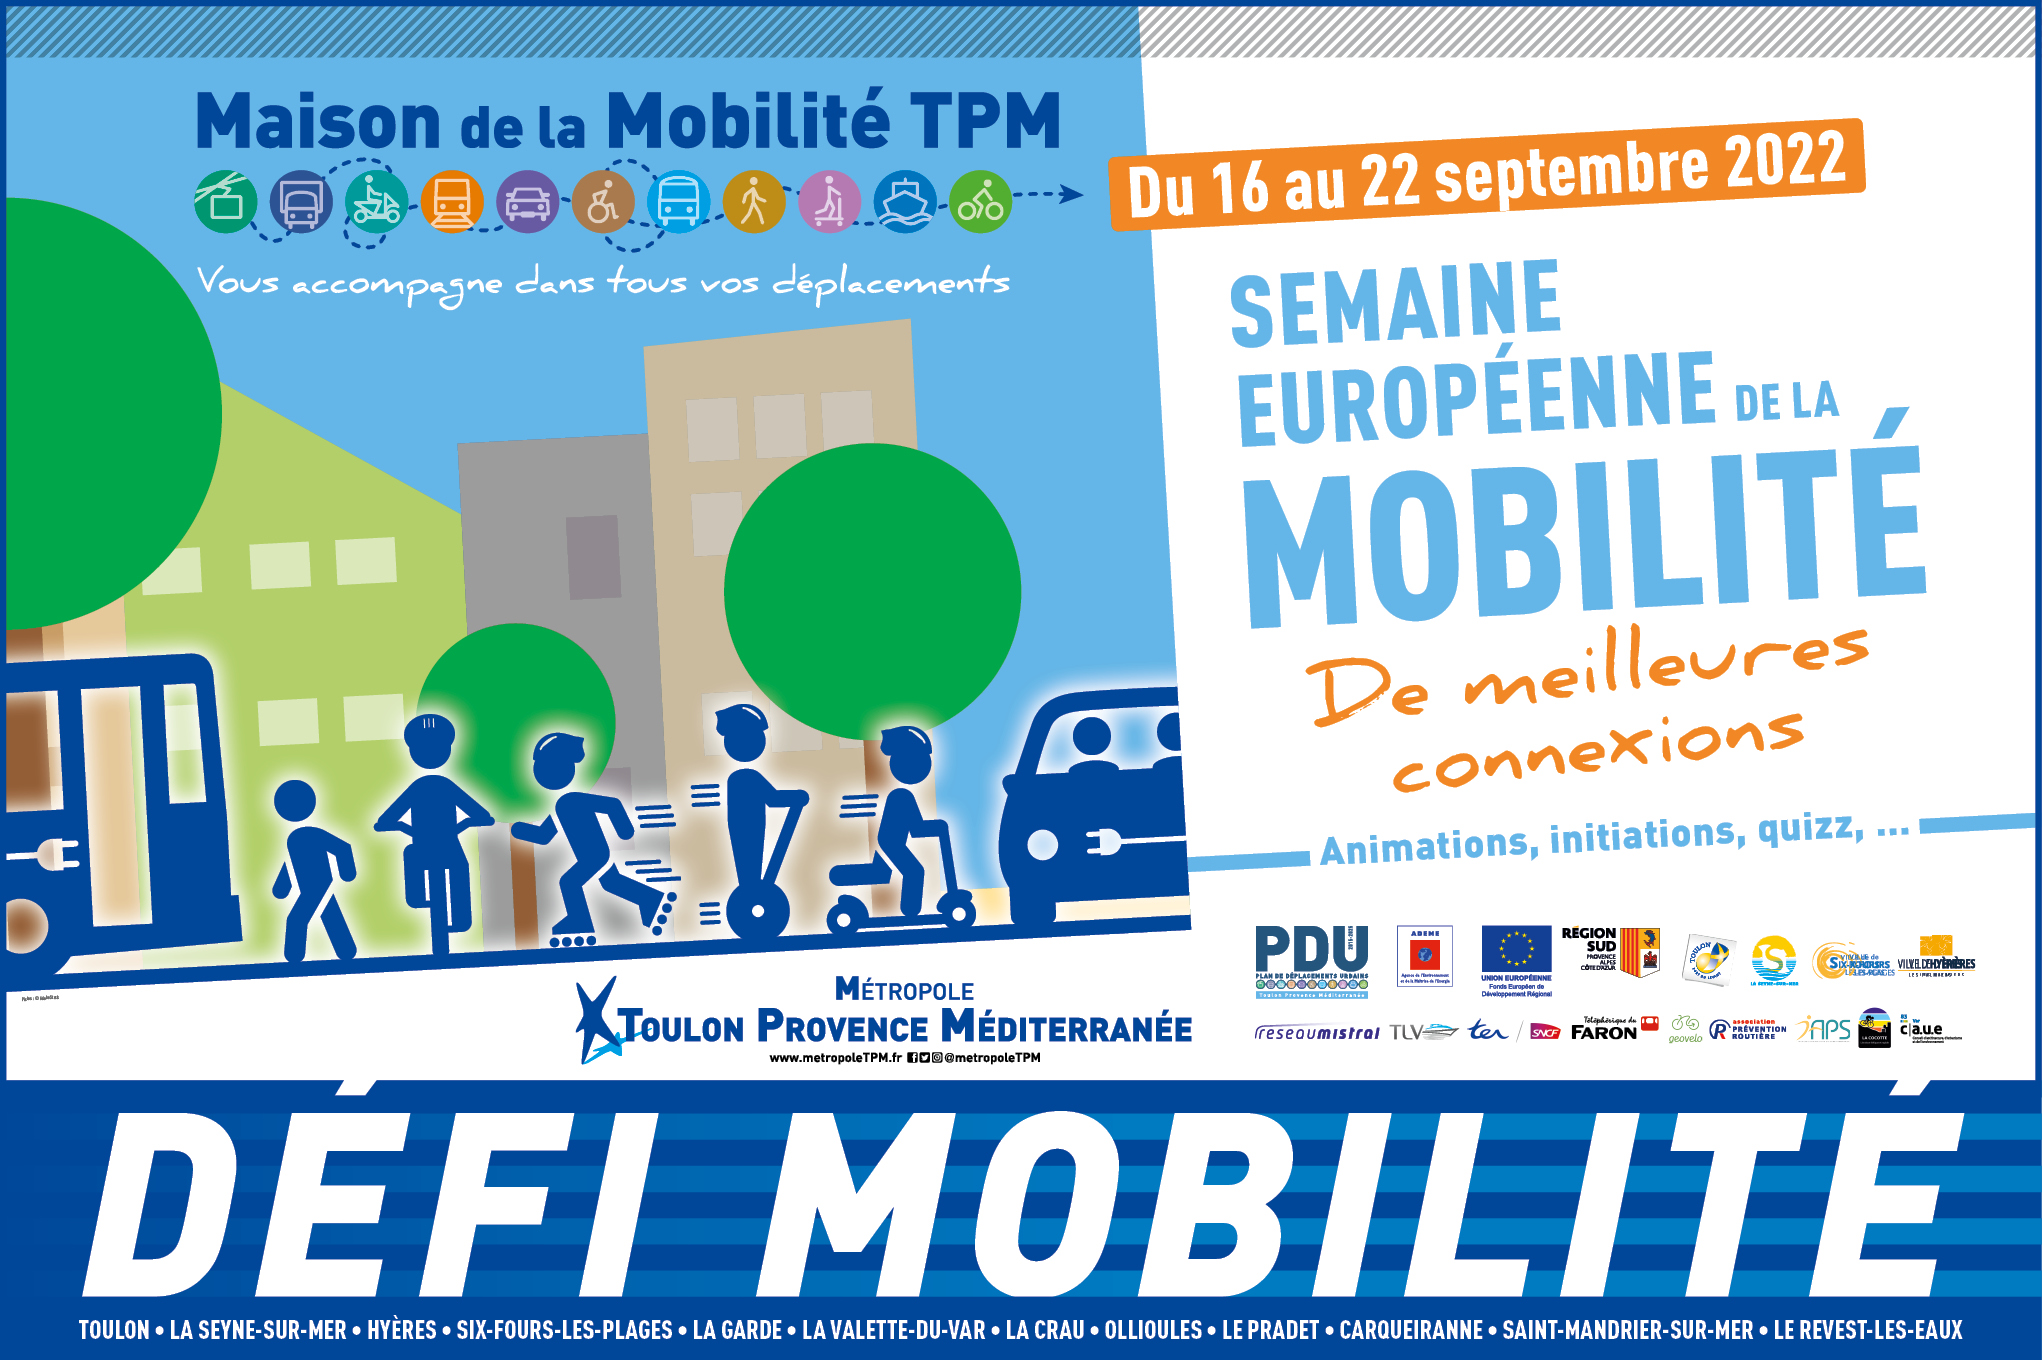 Semaine européenne de la Mobilité | Métropole Toulon Provence Méditerranée